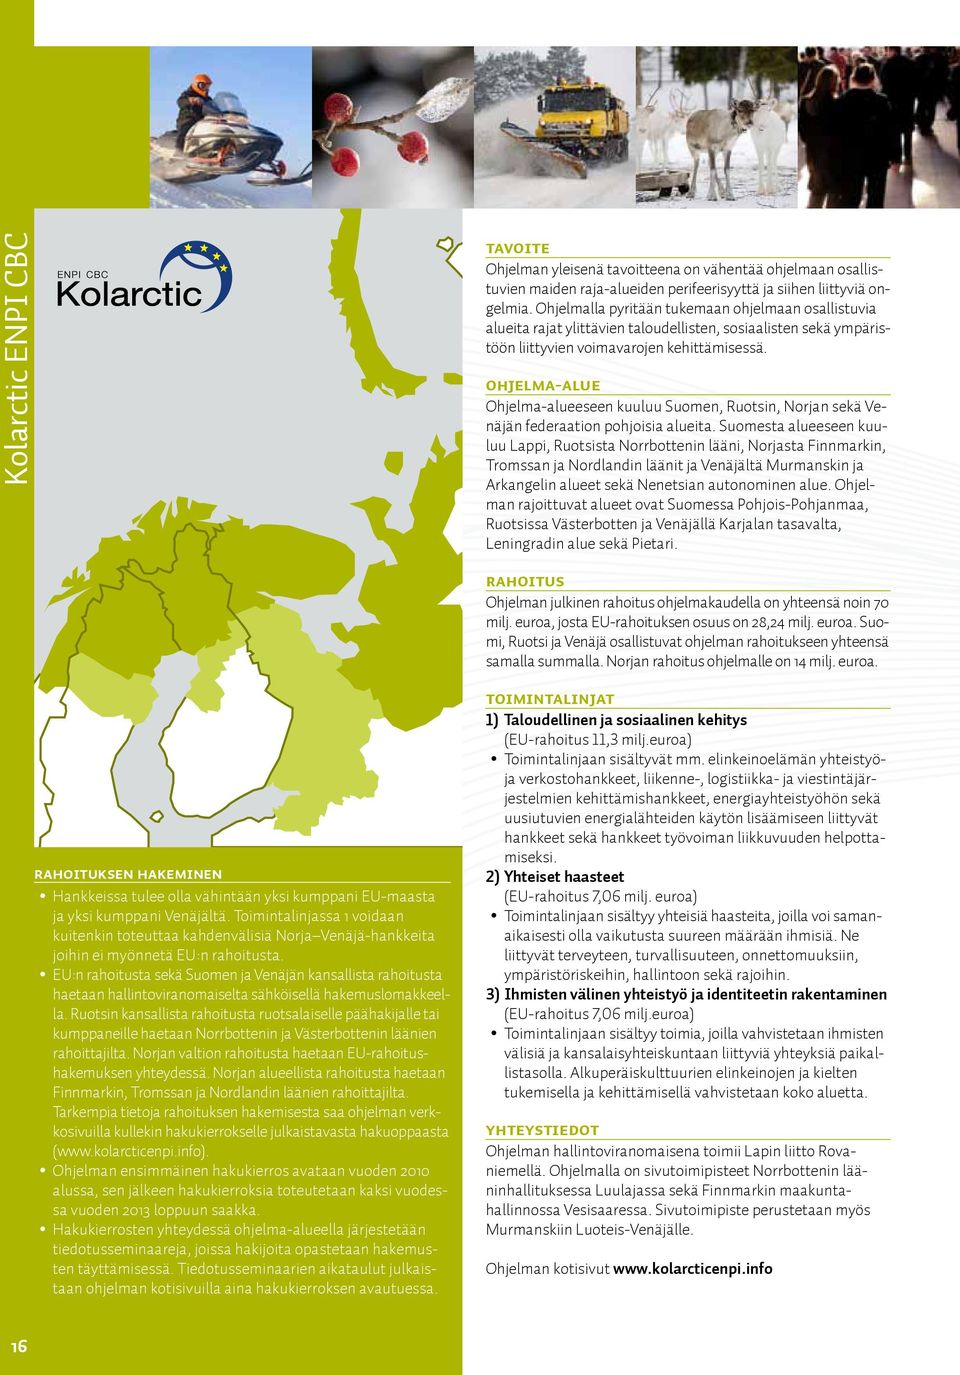 Ohjelma-alue Ohjelma-alueeseen kuuluu Suomen, Ruotsin, Norjan sekä Venäjän federaation pohjoisia alueita.